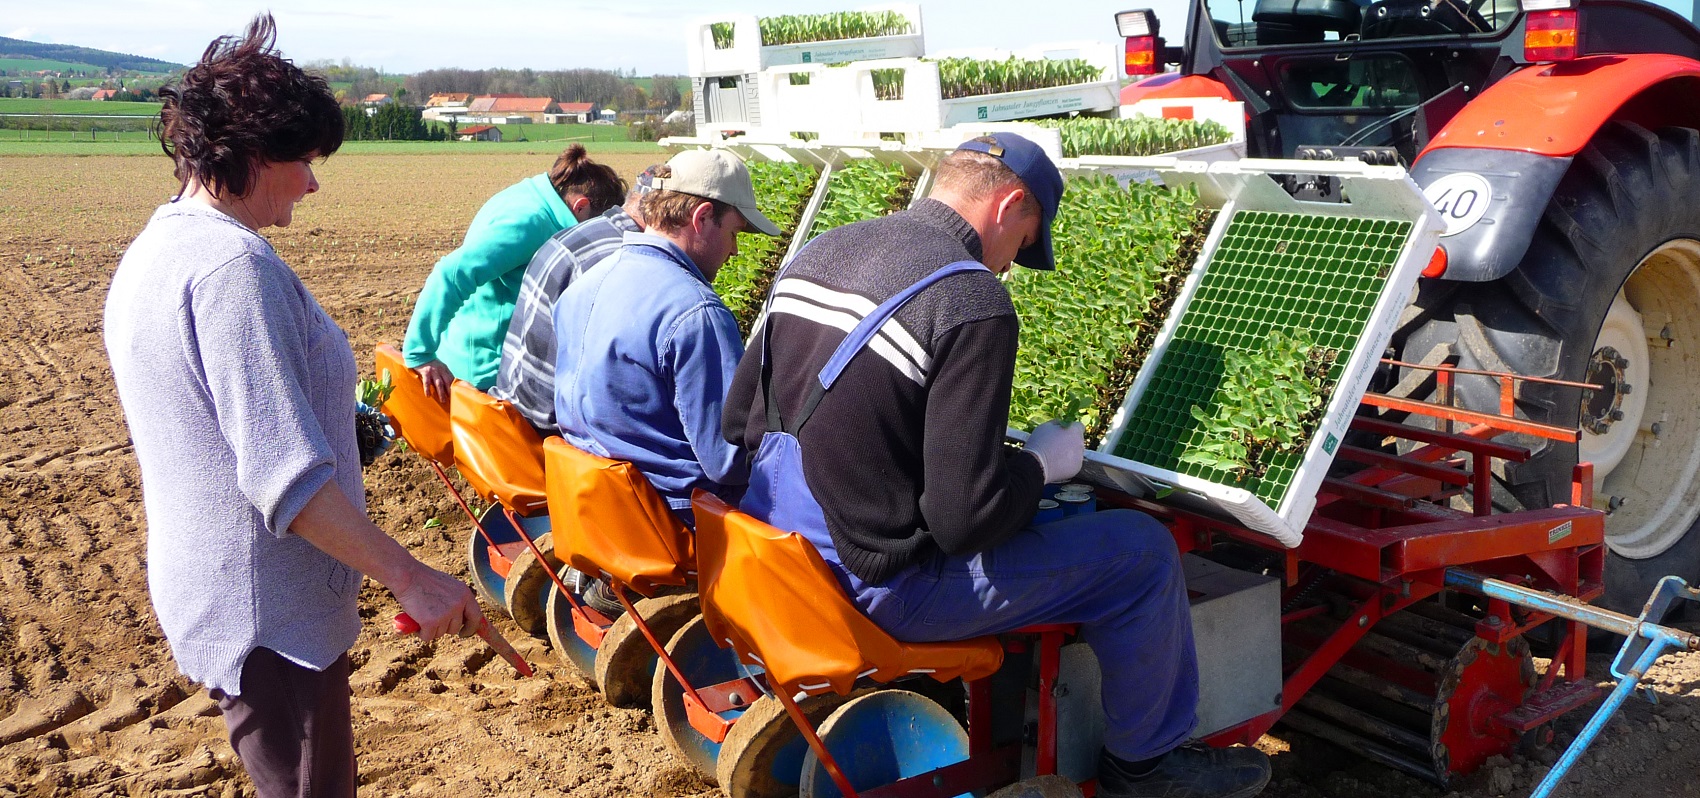 Angestellte eines Gartenbaubetriebs beim Pflanzen von Salat auf einem Feld mittels Pflanzmaschine an einem Traktor